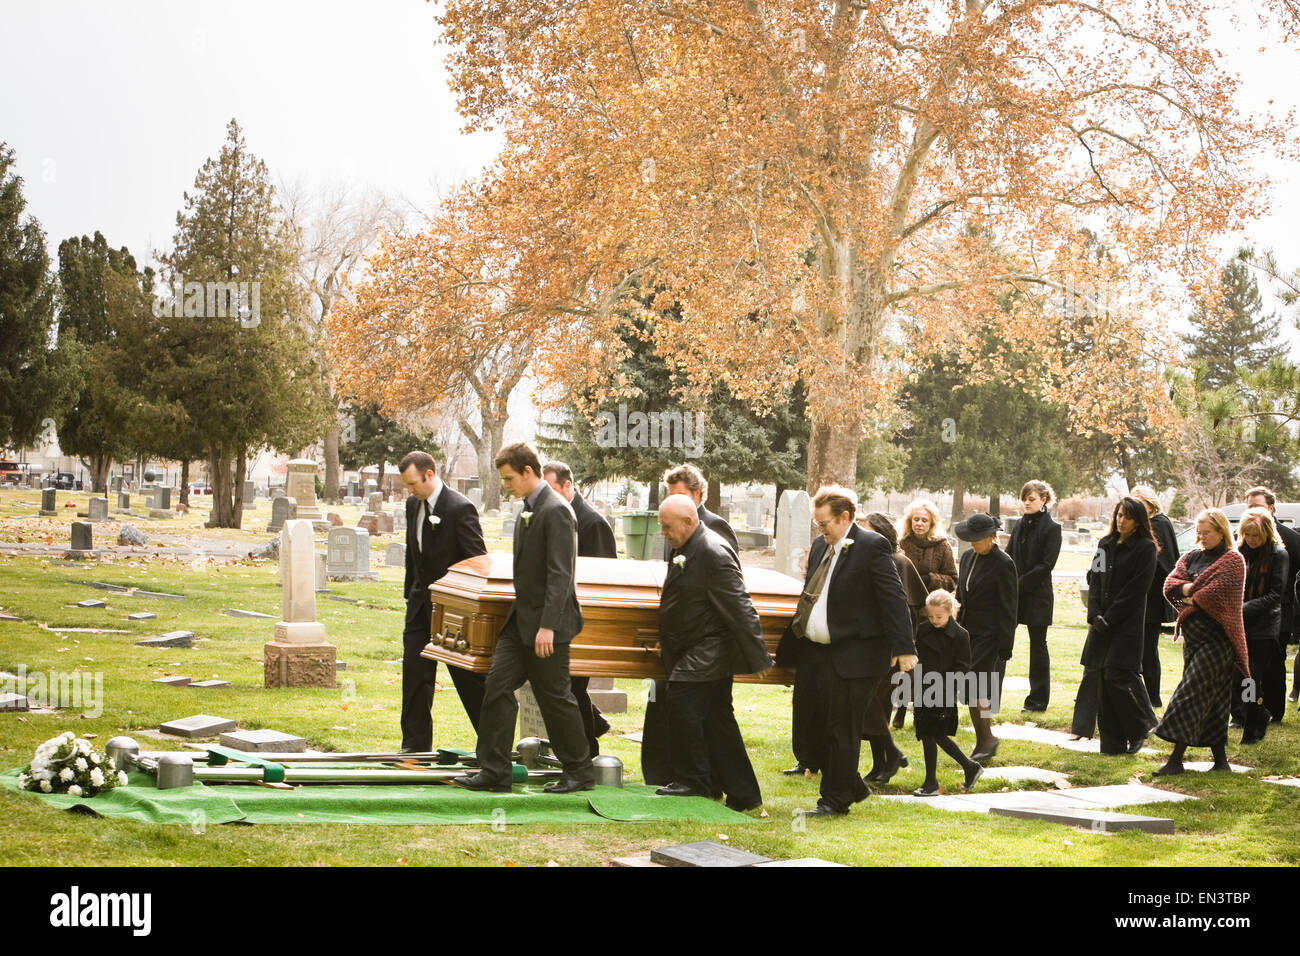 La gente en un entierro en un cementerio Foto de stock